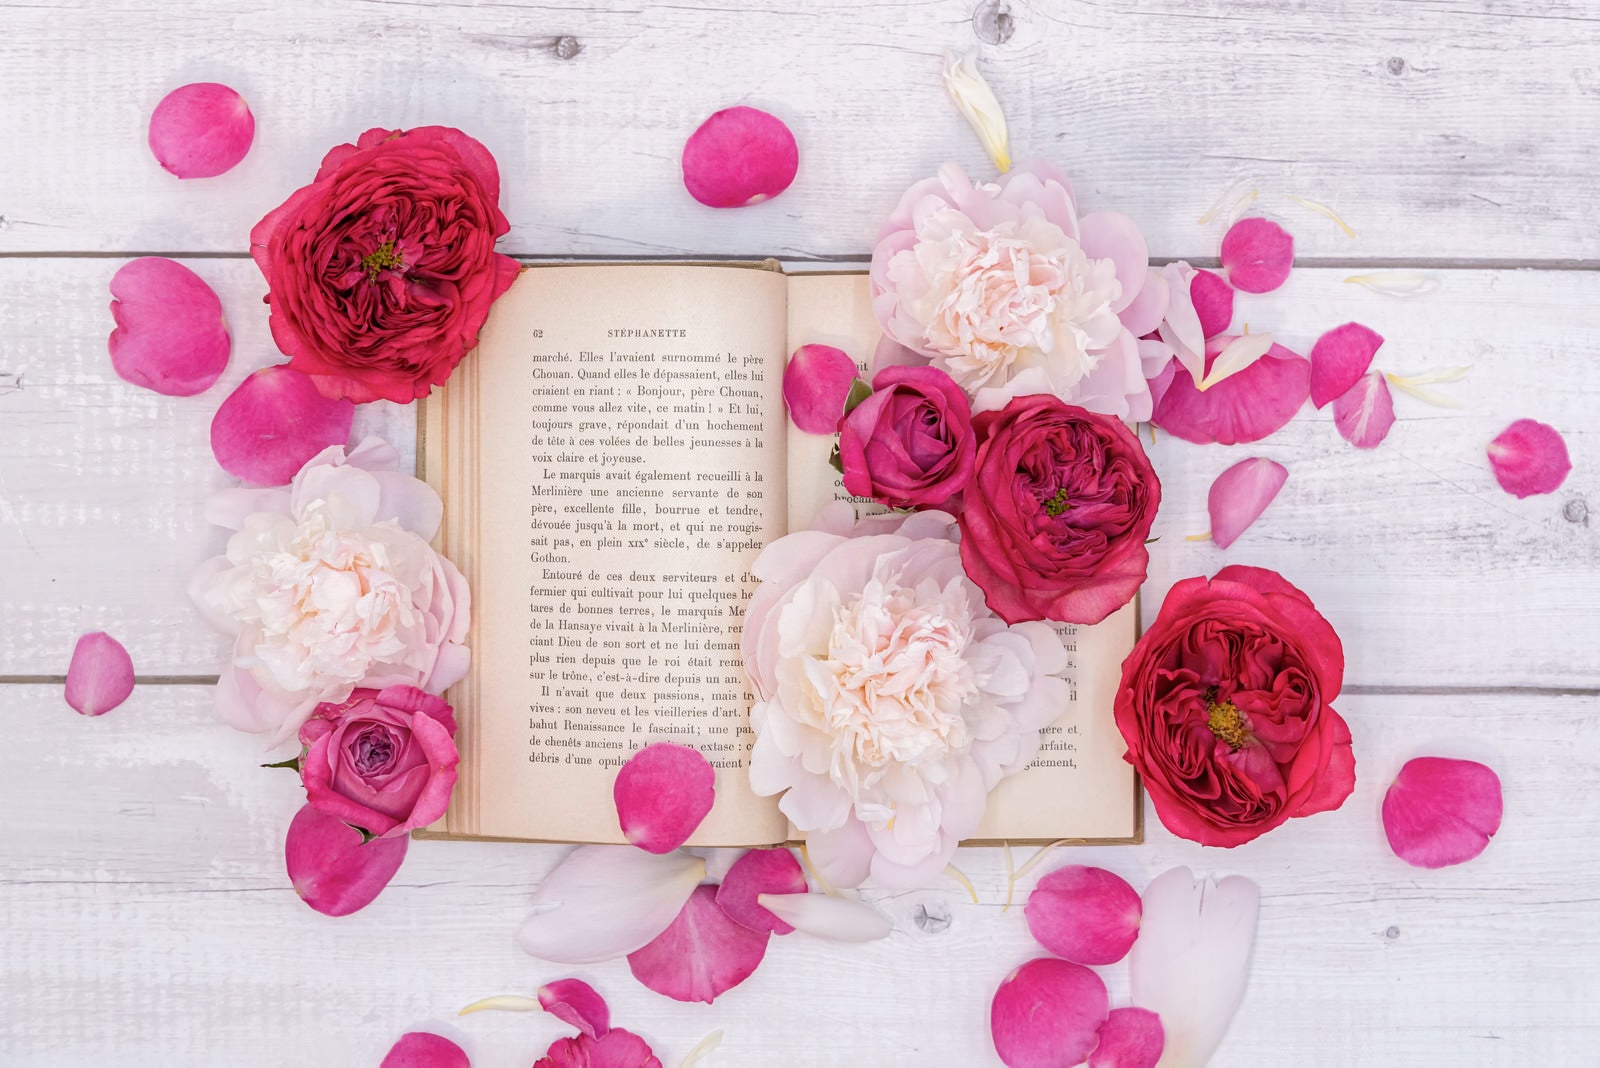 「散らばった薔薇の花びらと読みかけの古書」の写真